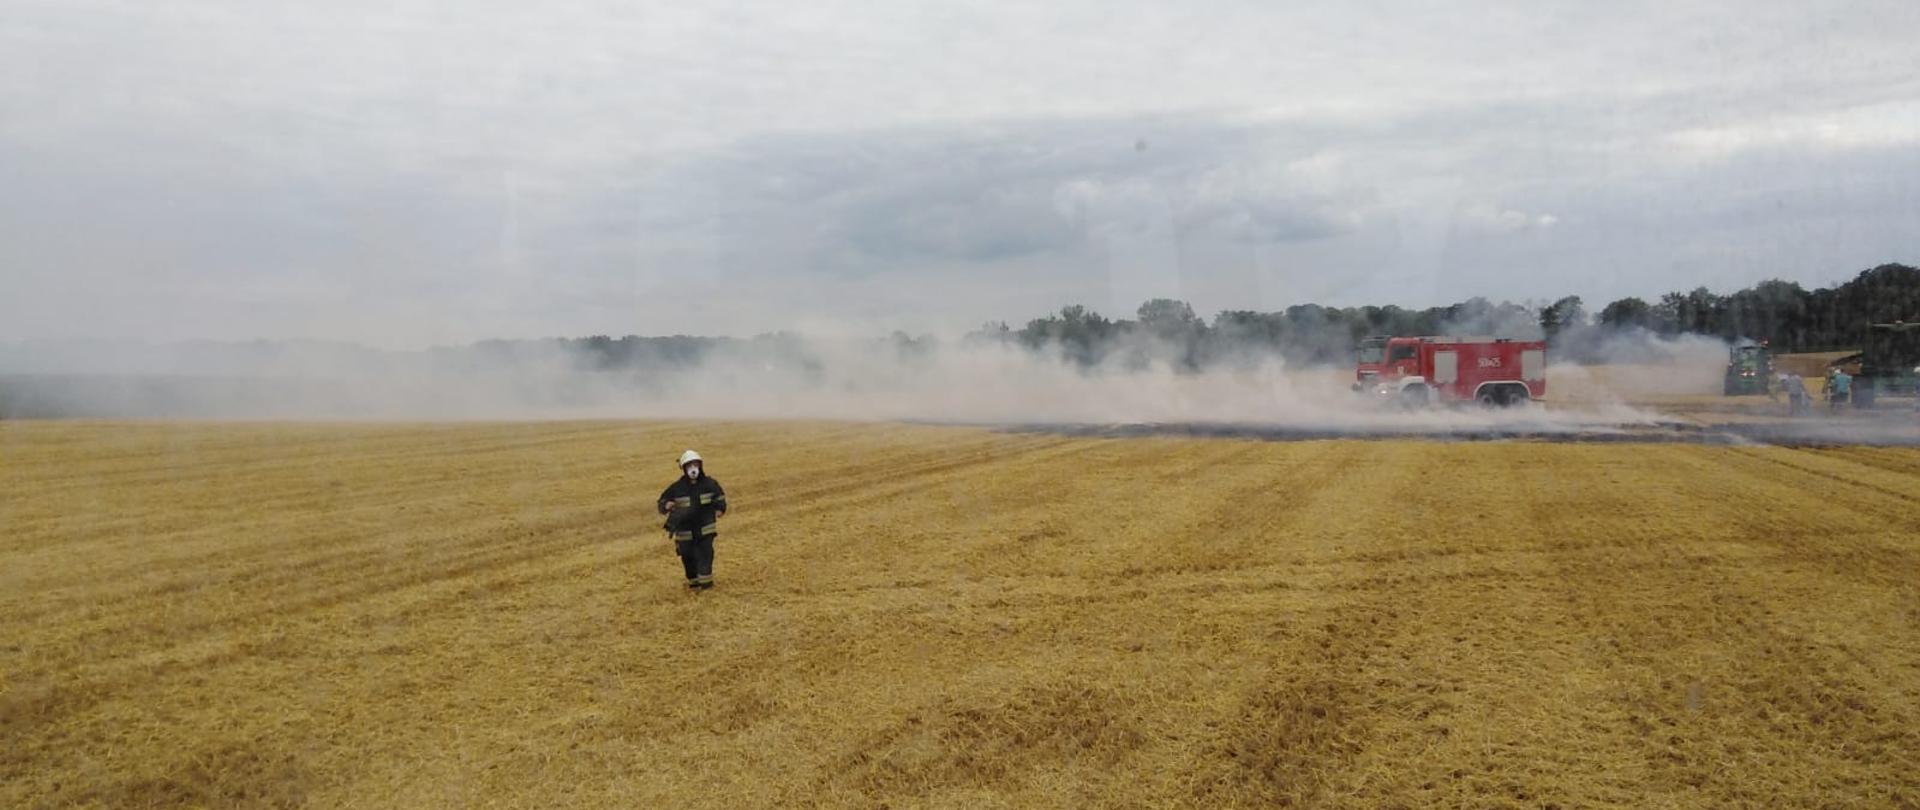 Zdjęcie przedstawia pożar ścierniska na polu podczas prac w trakcie żniw